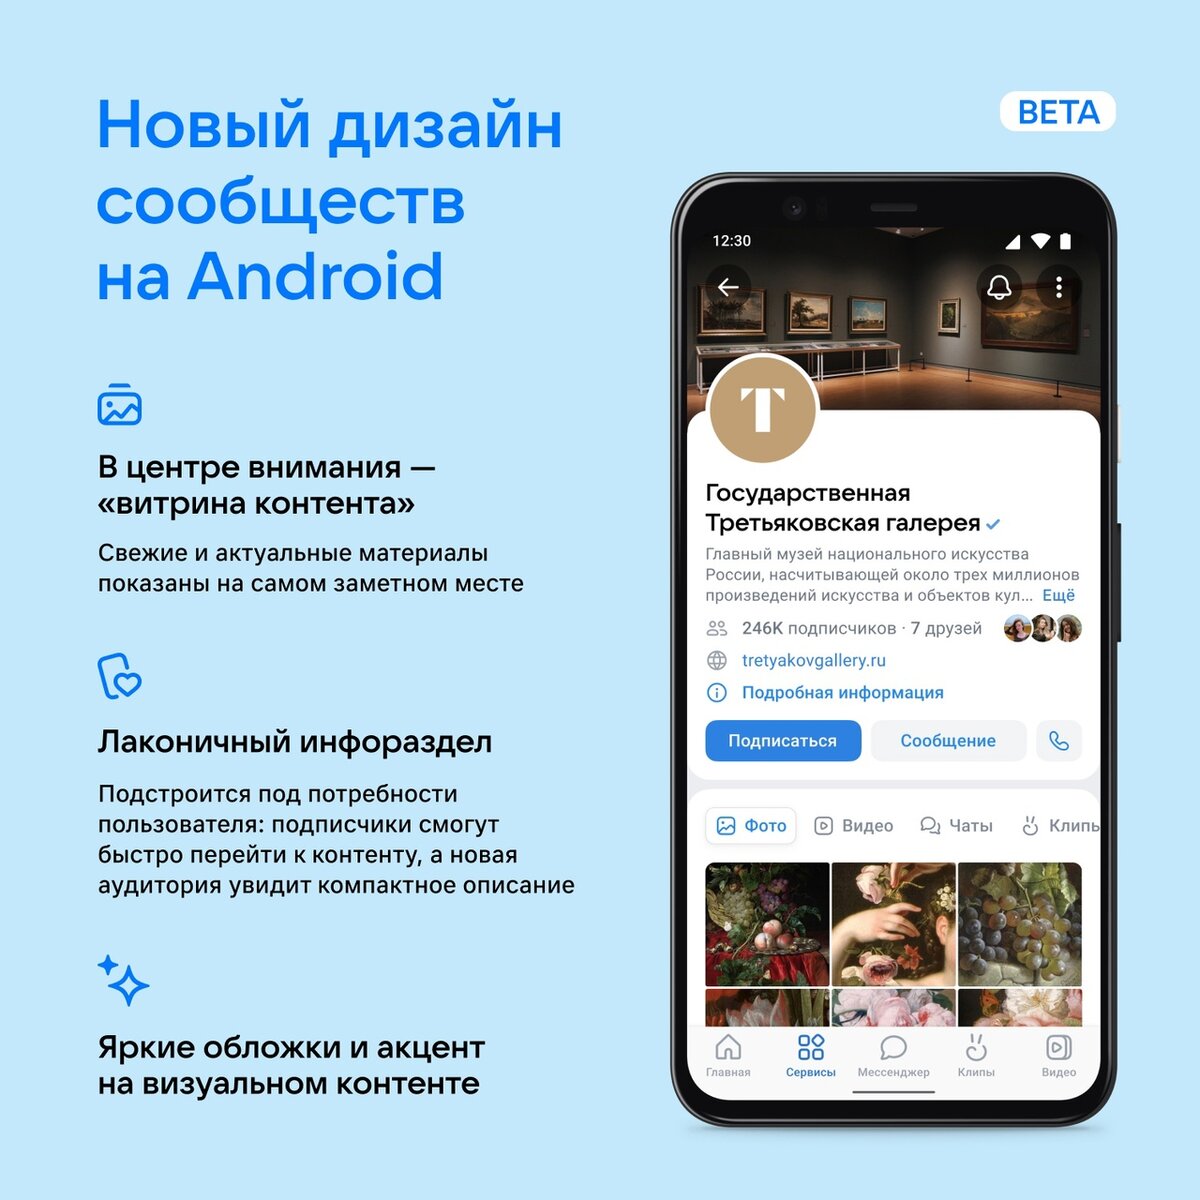 Идеи для оформления страницы ВКонтакте